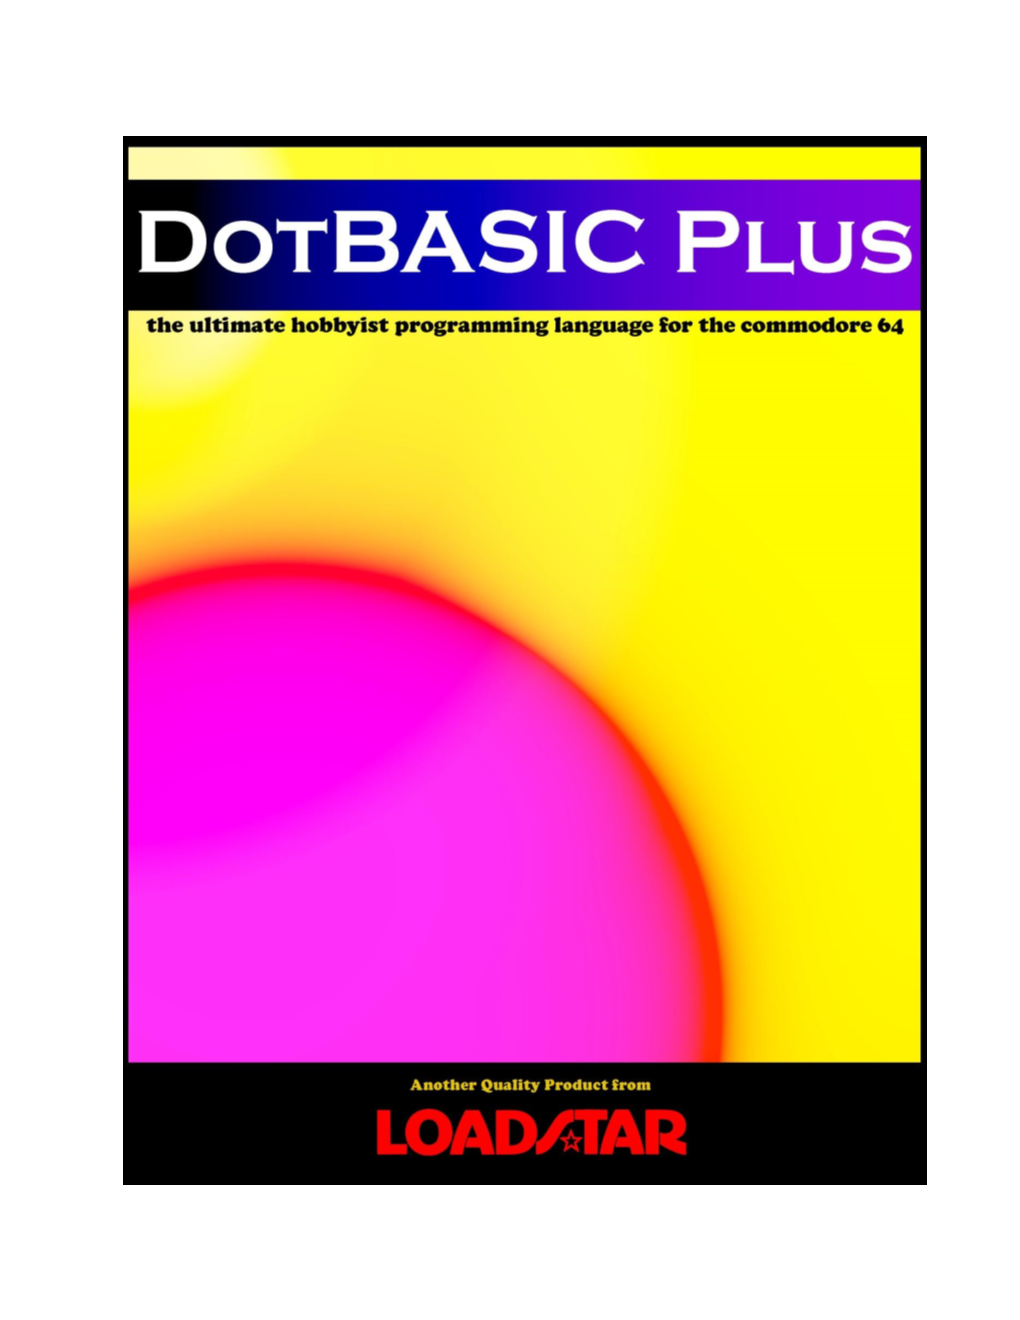 The Dotbasic Plus Manual